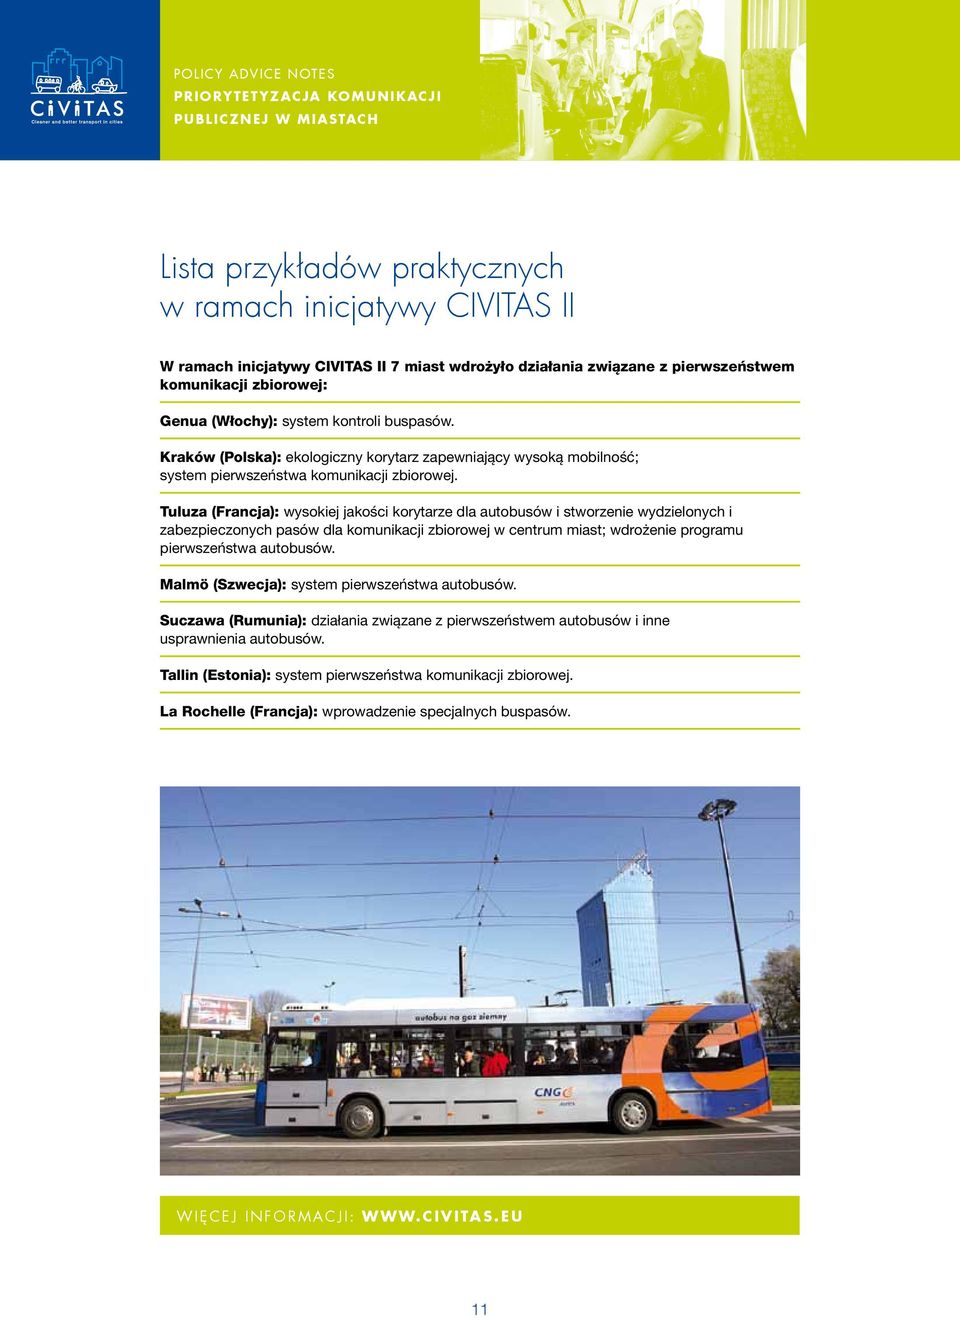 Tuluza (Francja): wysokiej jakości korytarze dla autobusów i stworzenie wydzielonych i zabezpieczonych pasów dla komunikacji zbiorowej w centrum miast; wdrożenie programu pierwszeństwa autobusów.